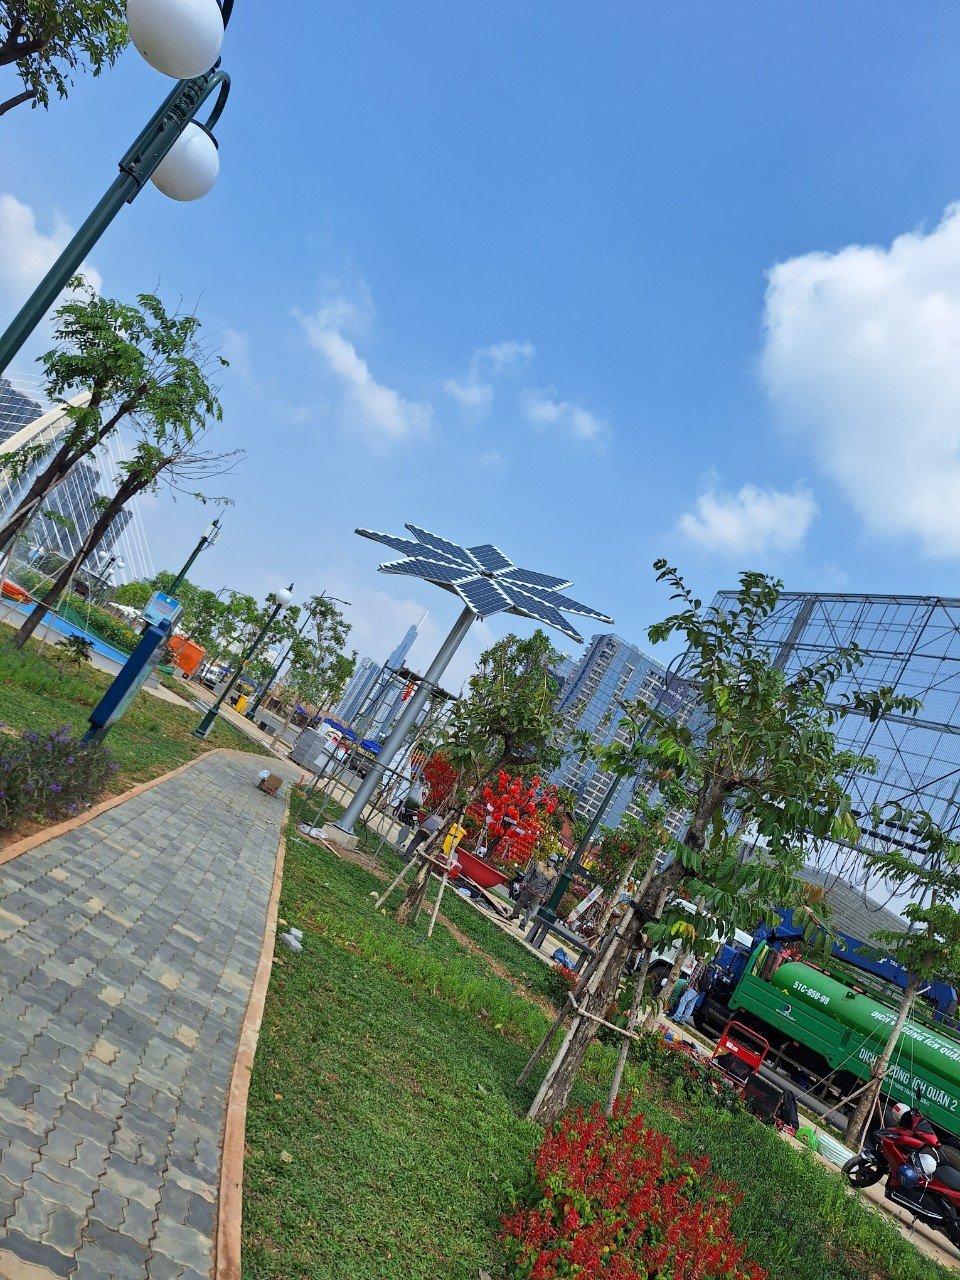 Dự án "Điện mặt trời hoa hướng dương" nhằm thúc đẩy sự phát triển của năng lượng xanh, sạch tại TP HCM